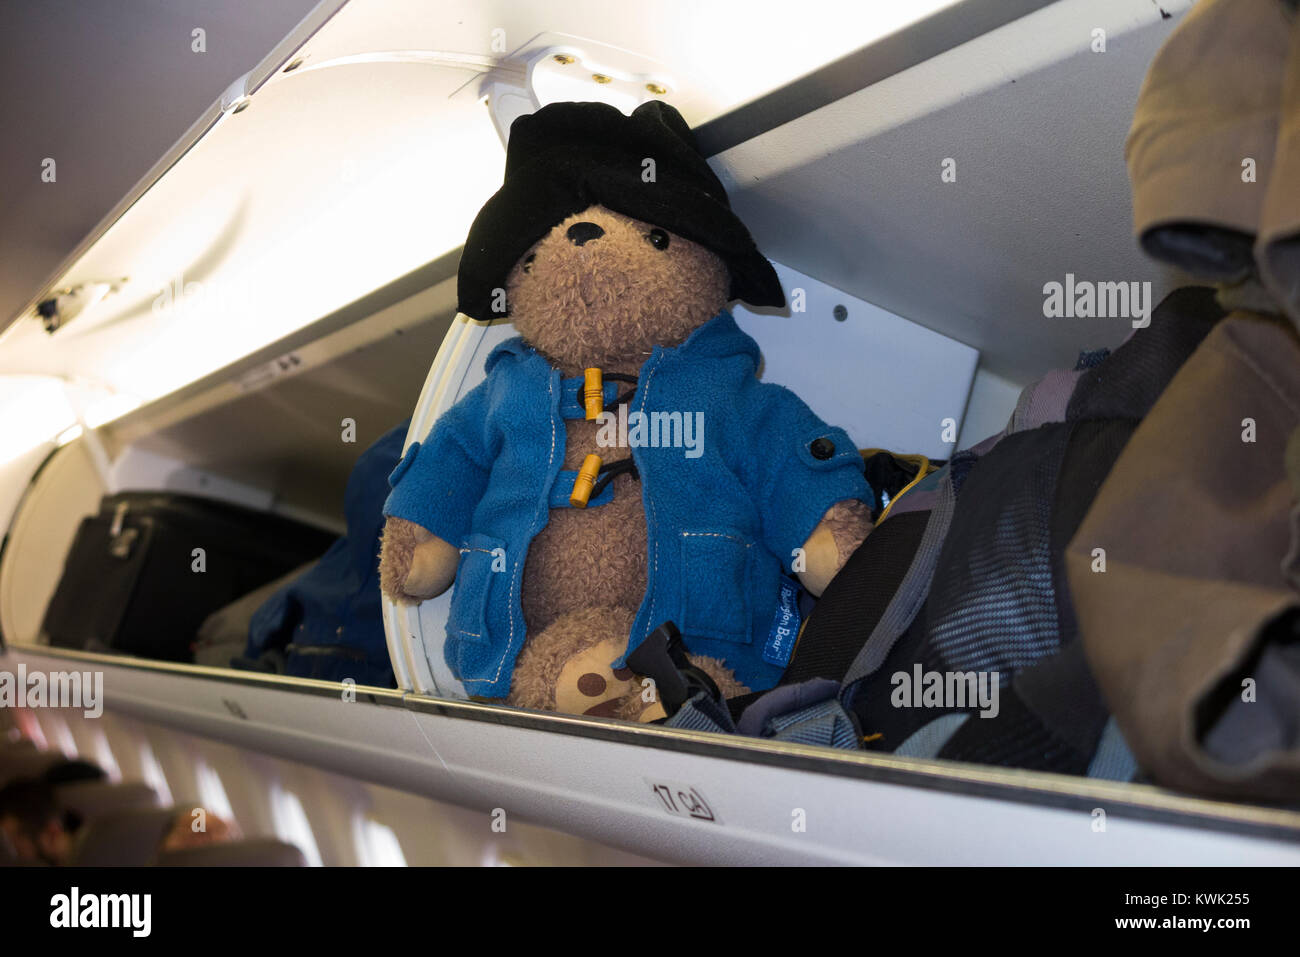 Childs juguete blando, Paddington bear, posiblemente perdidos, en avión de pasajeros avión equipaje techo bin / vestuario / Taquillas / compartimento compartimentos / Foto de stock